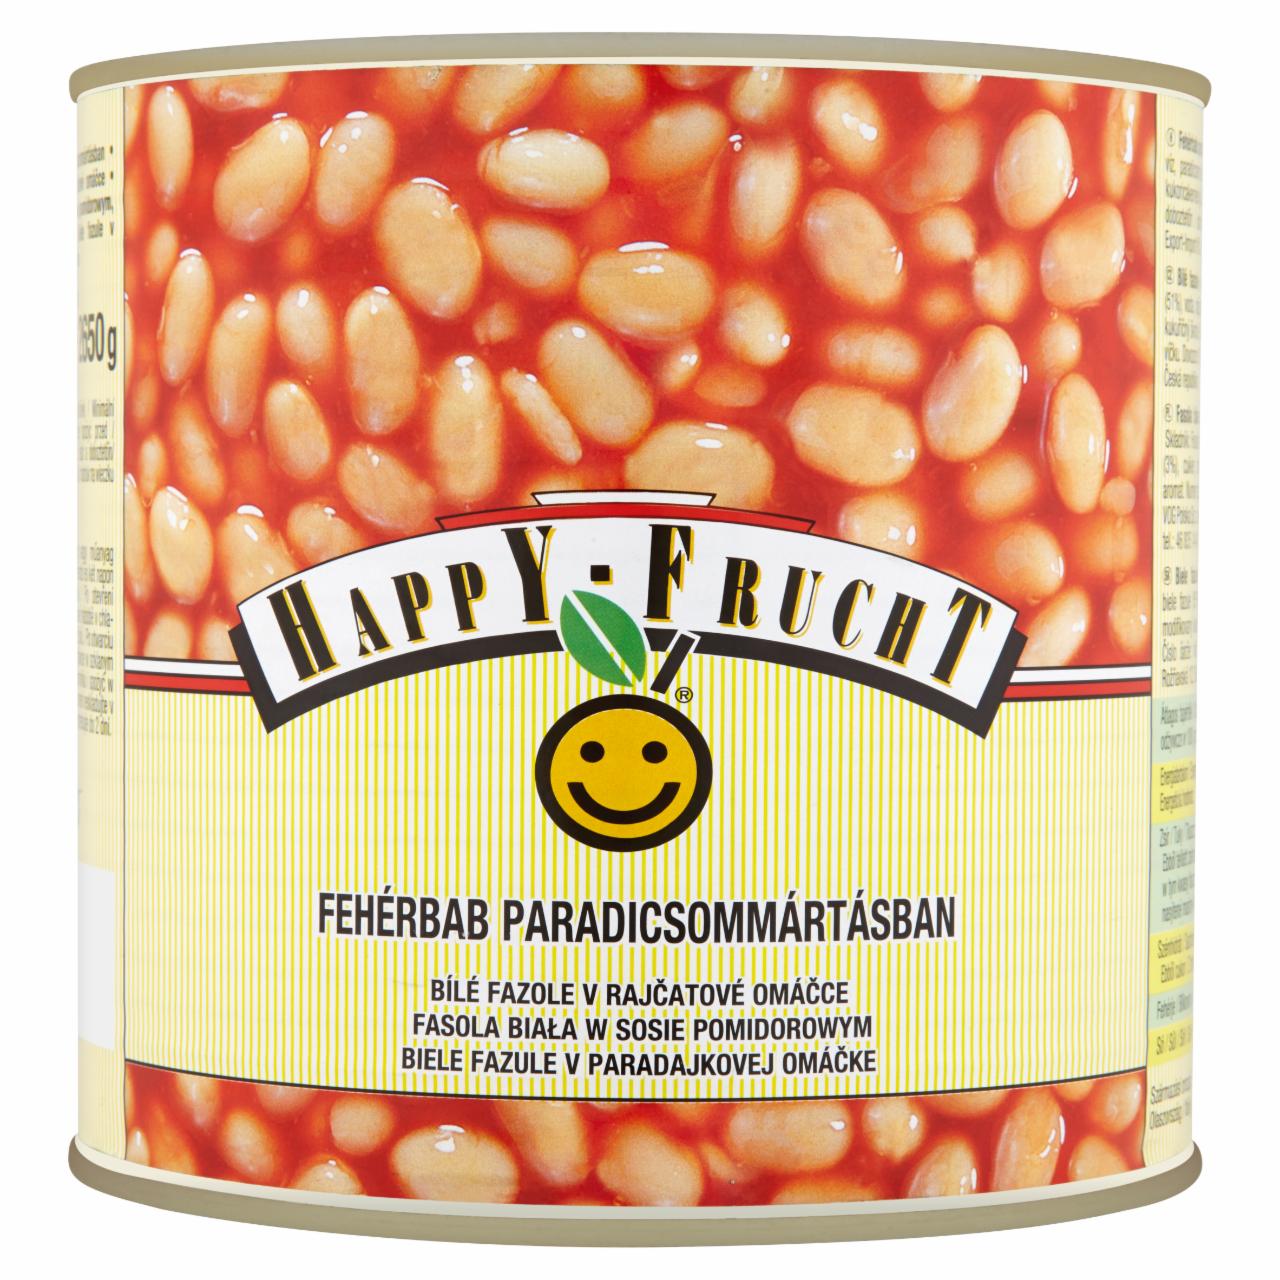 Zdjęcia - HAPPY FRUCHT Fasola biała w sosie pomidorowym 2650 g